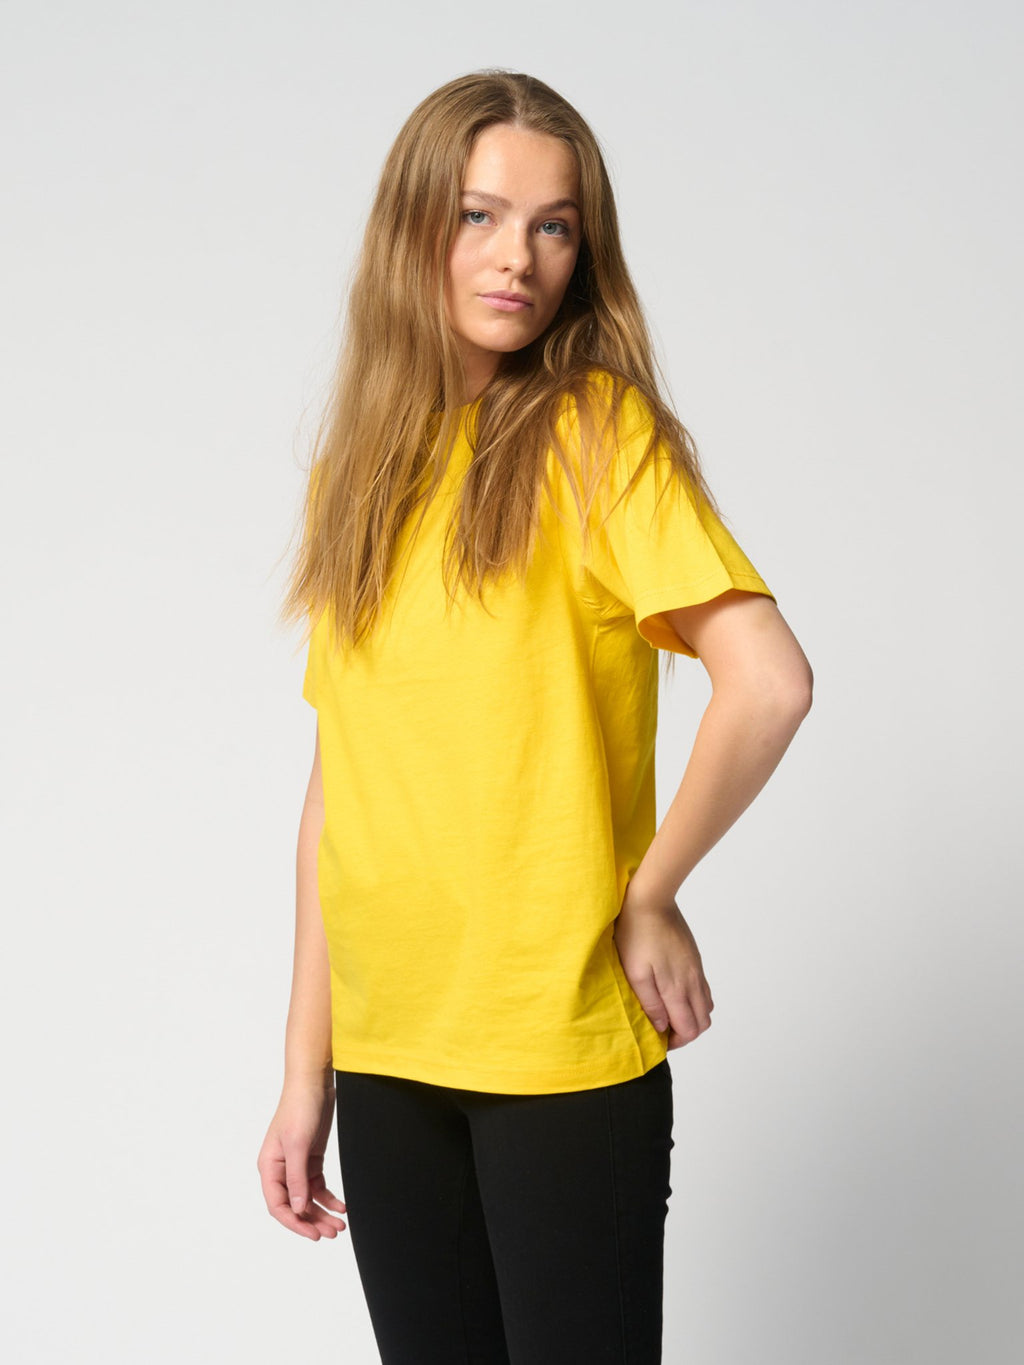 Negabaritiniai marškinėliai - geltoni